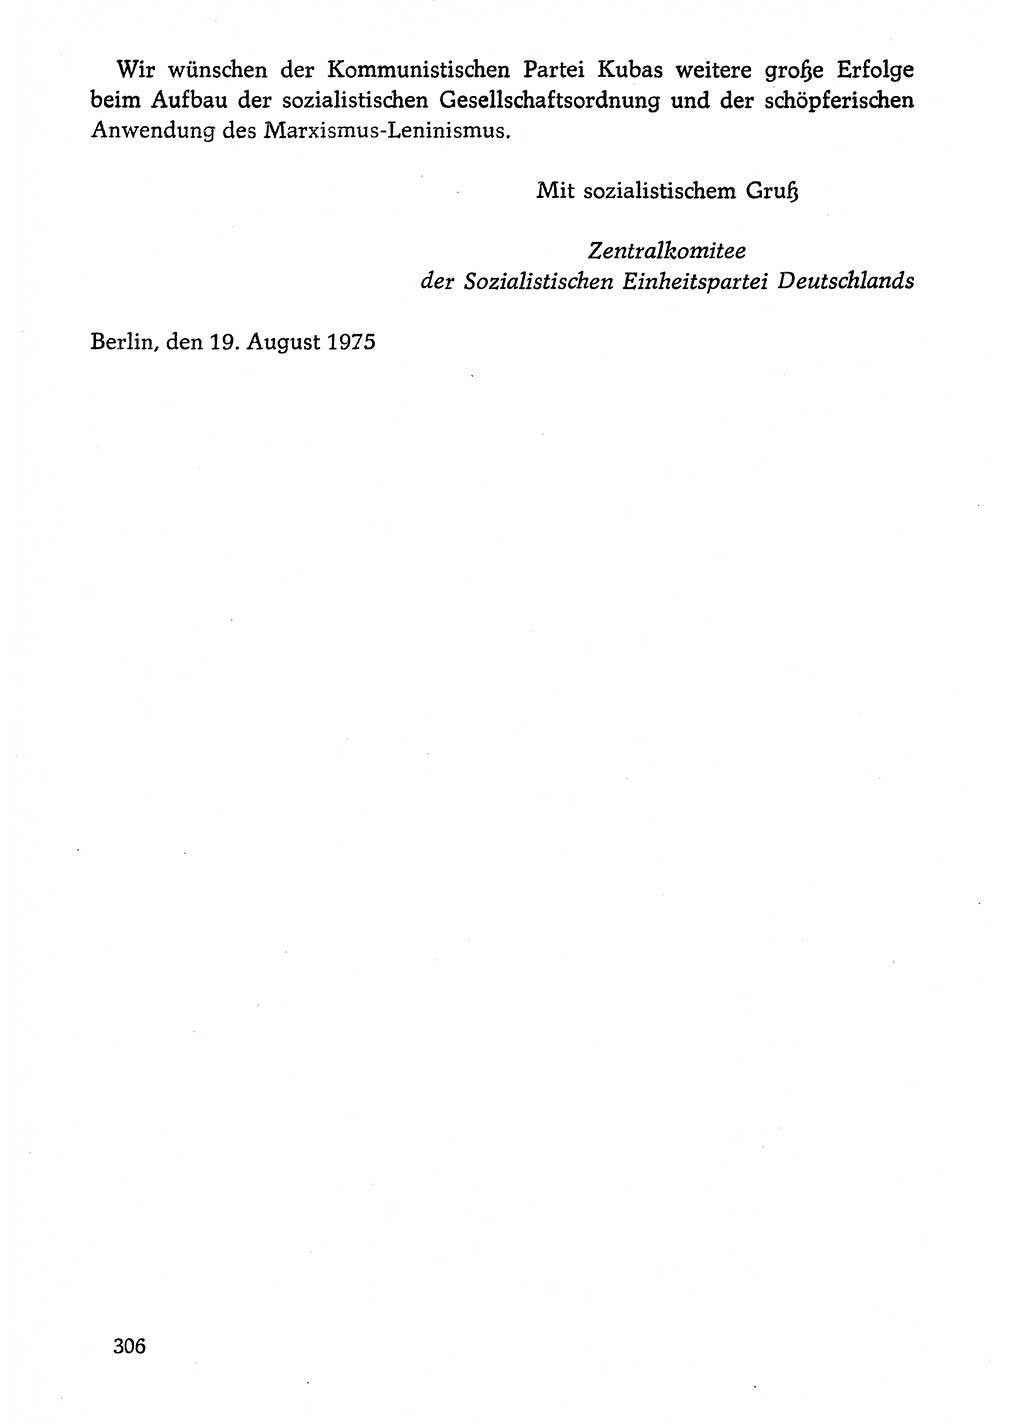 Dokumente der Sozialistischen Einheitspartei Deutschlands (SED) [Deutsche Demokratische Republik (DDR)] 1974-1975, Seite 306 (Dok. SED DDR 1978, Bd. ⅩⅤ, S. 306)